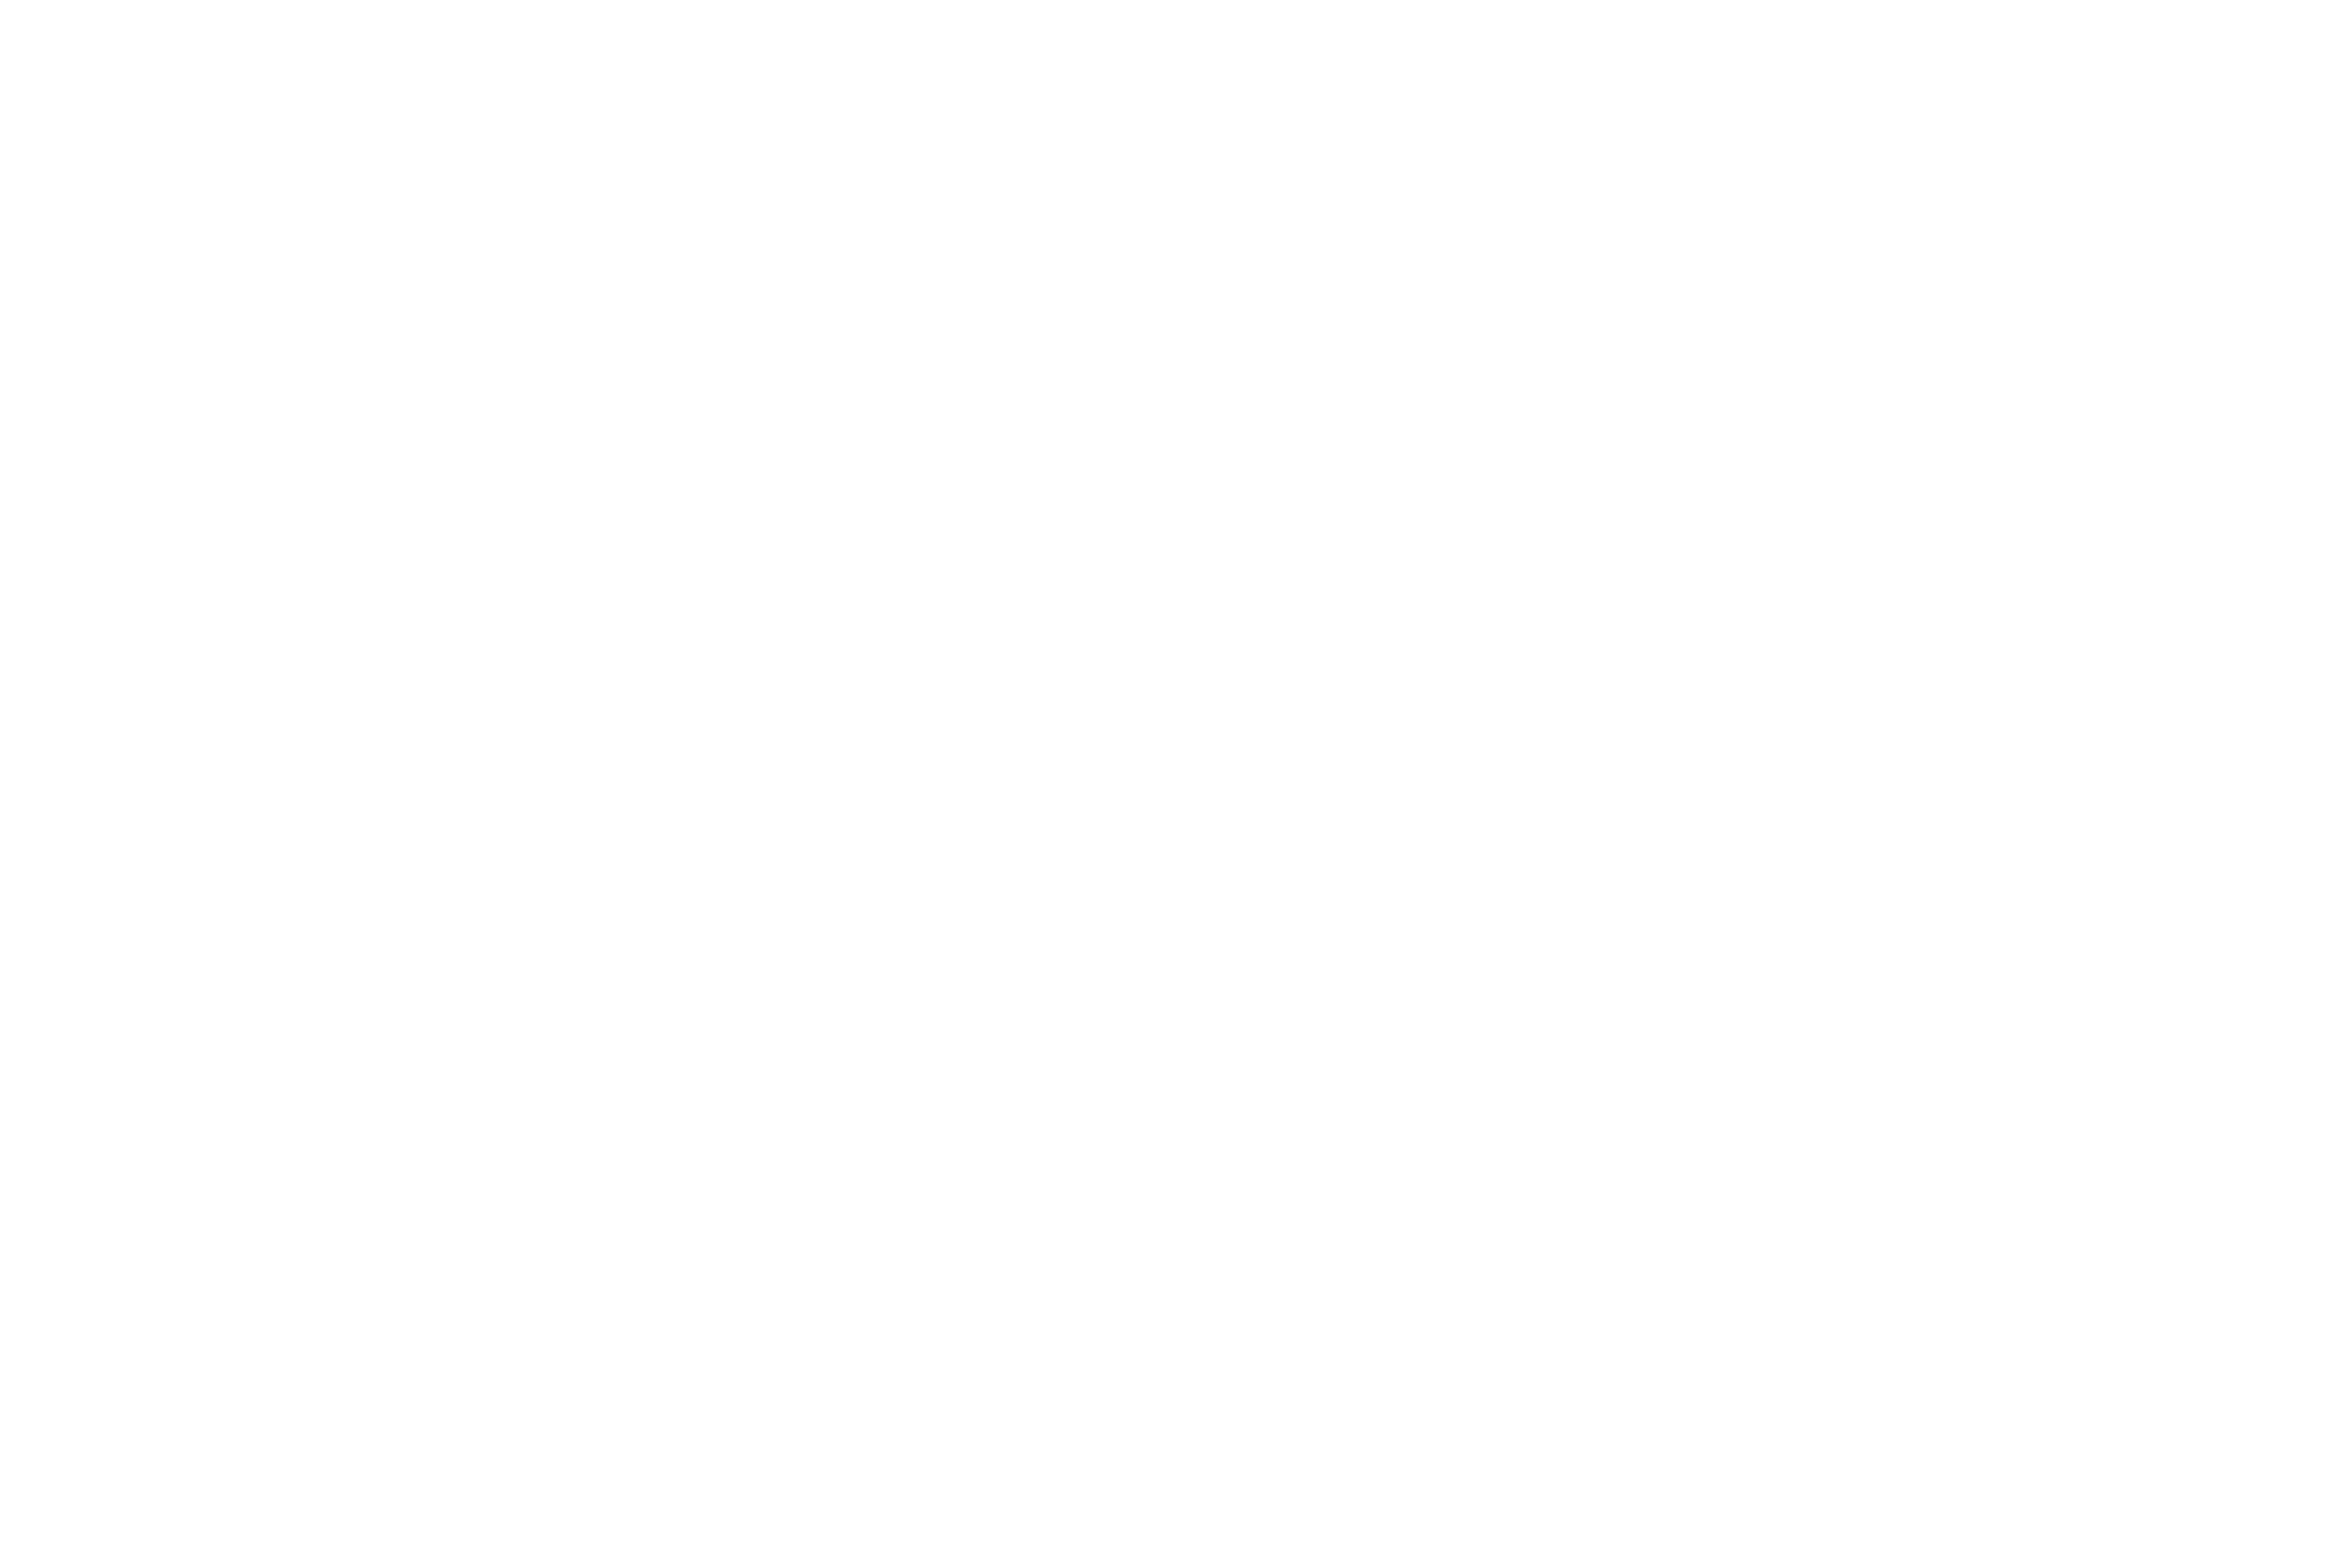 Acciona S.A. logo